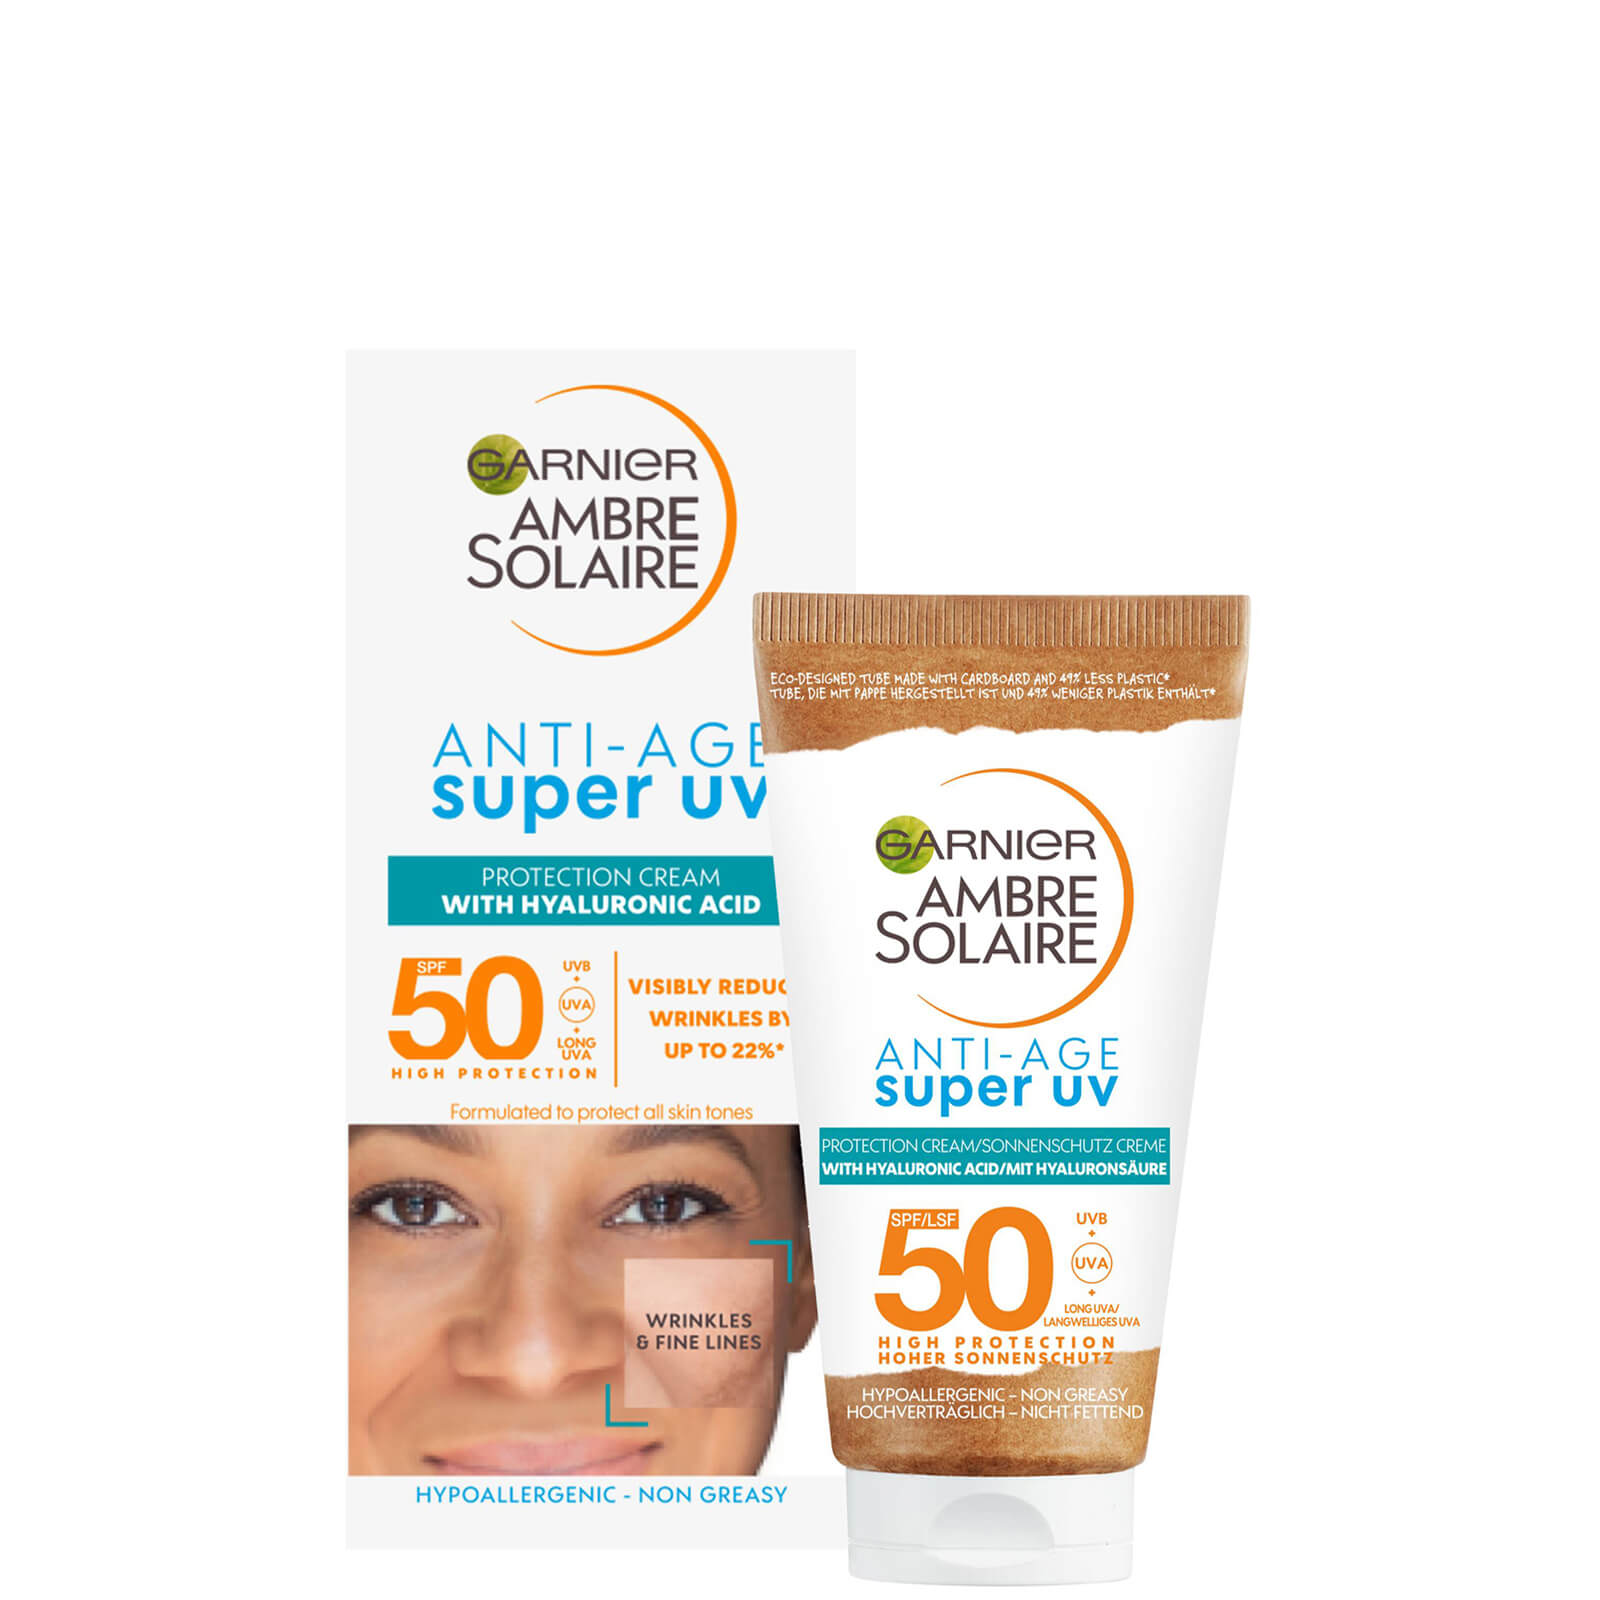 Image of Garnier Ambre Solaire Anti-Age Super UV Face Protection SPF50 Cream 50ml